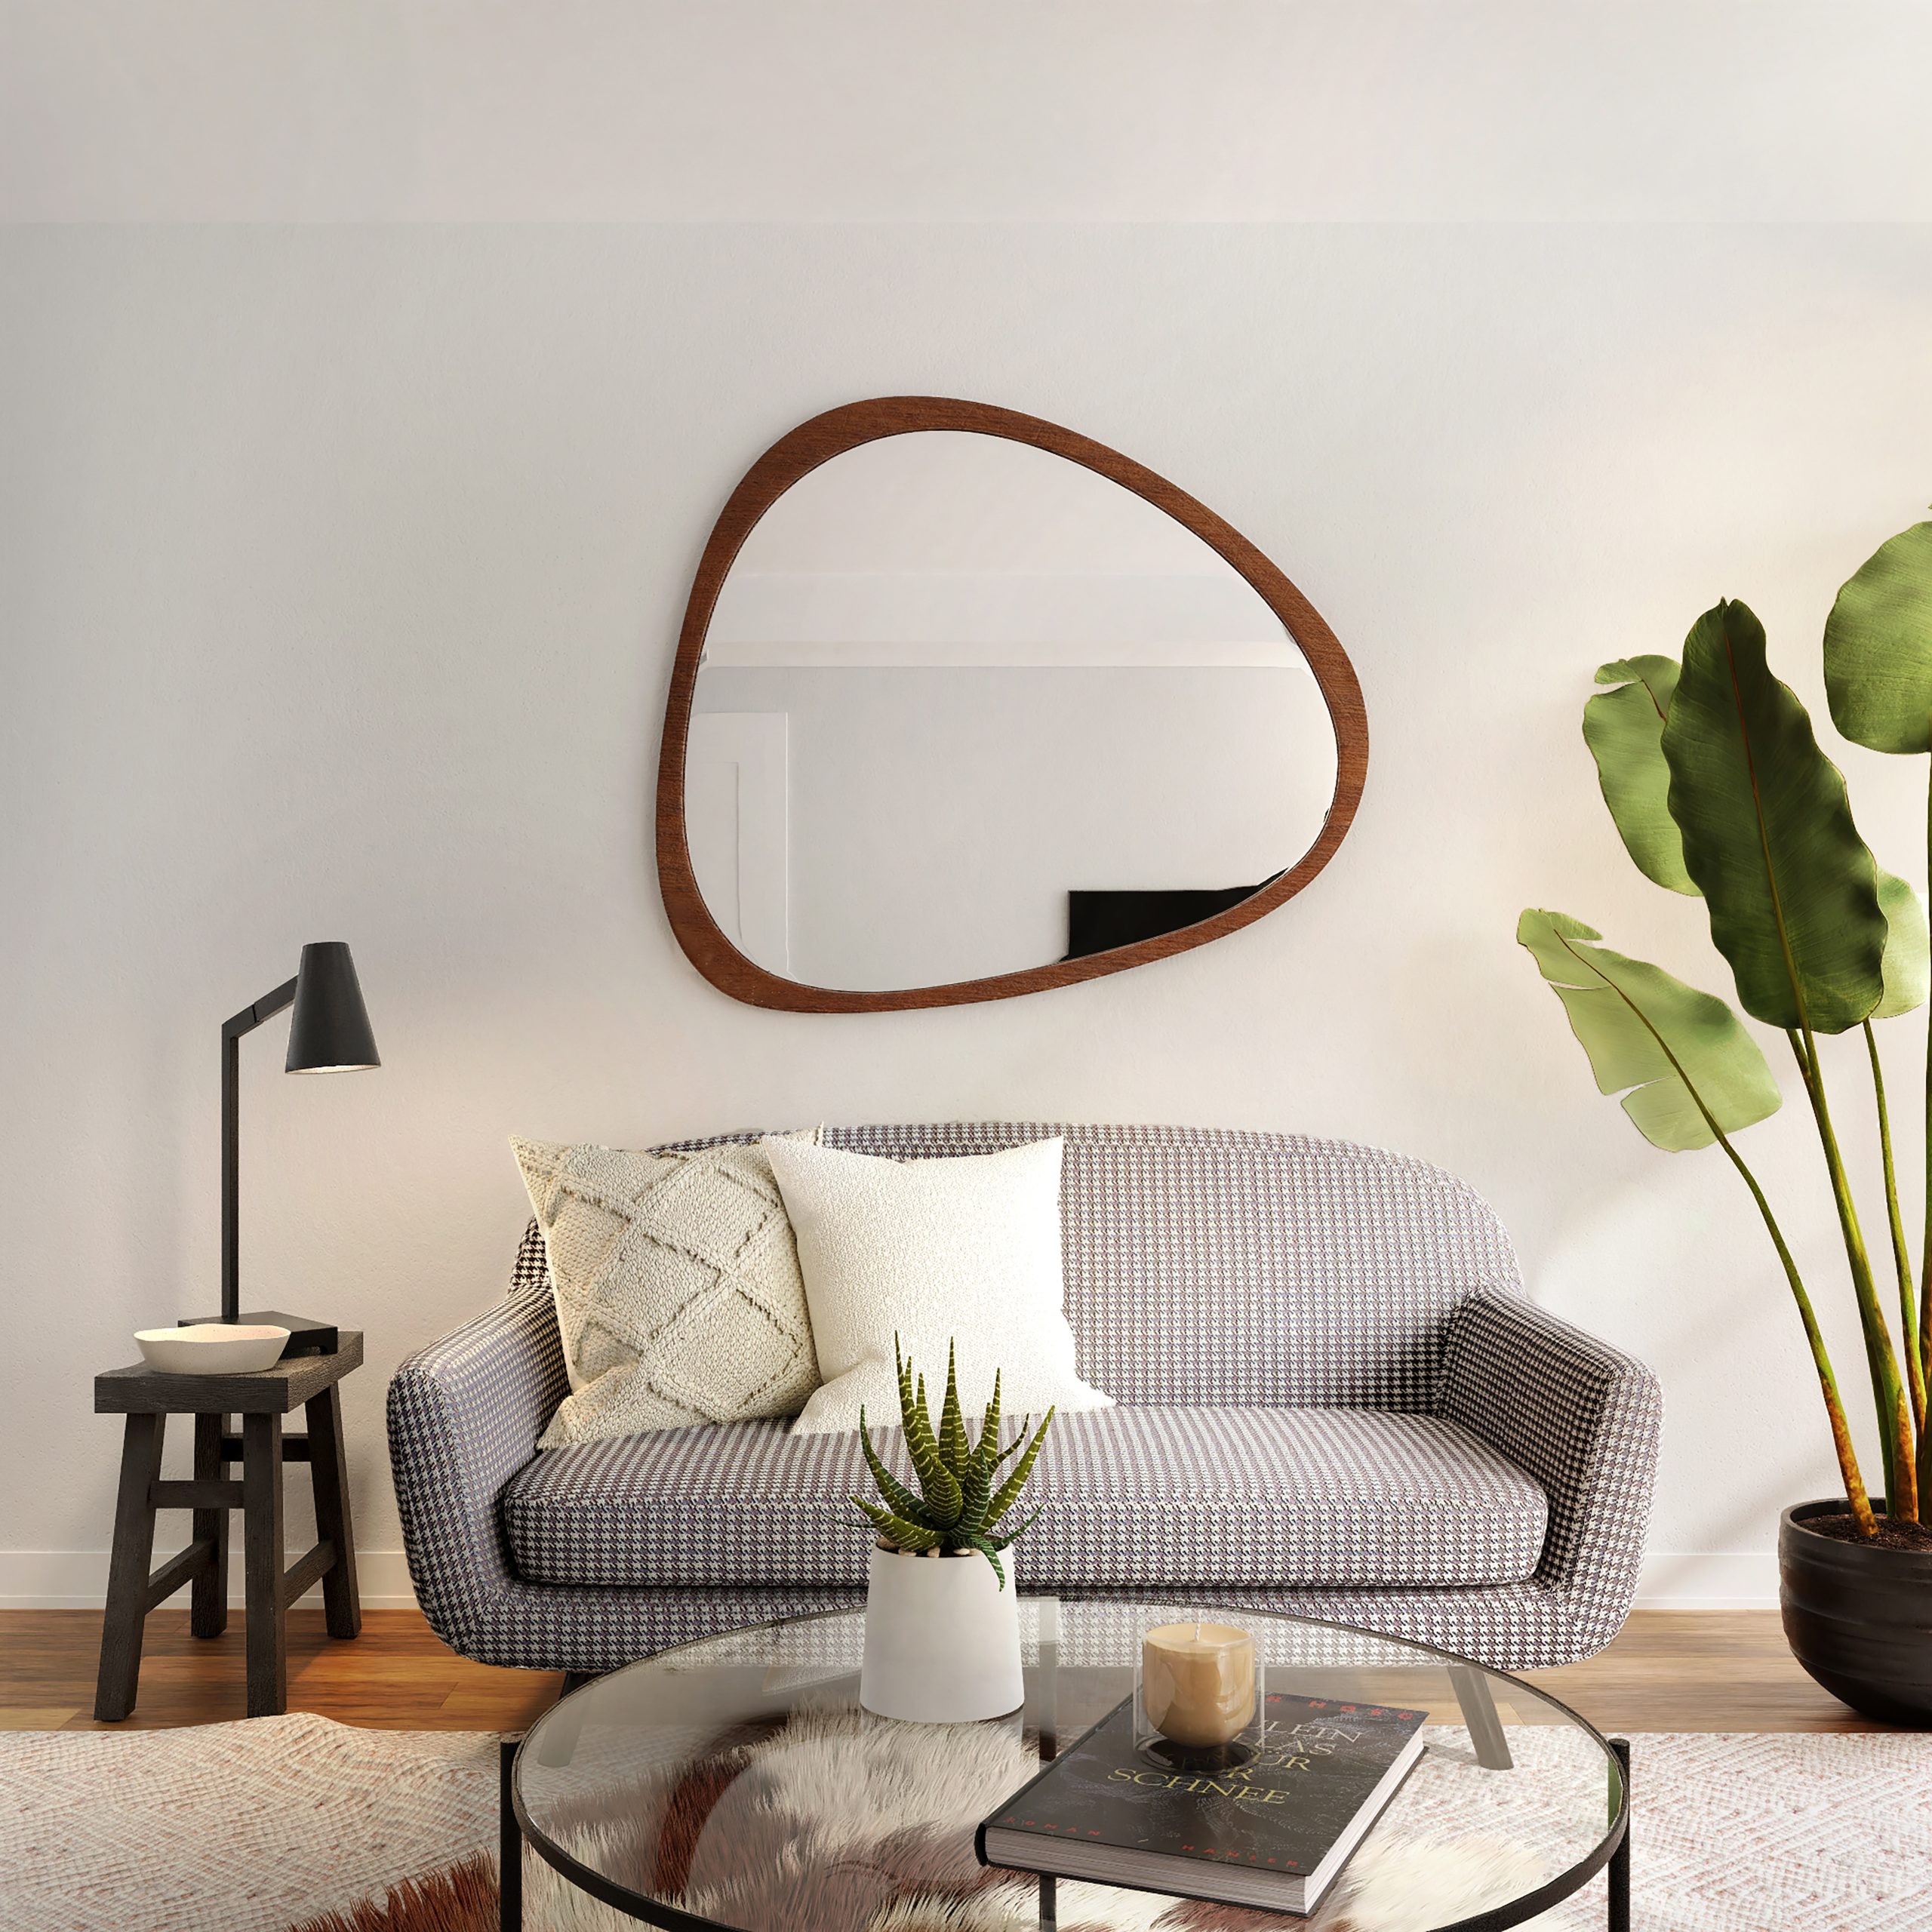 Rozen tafellamp: Een elegante toevoeging aan jouw interieur